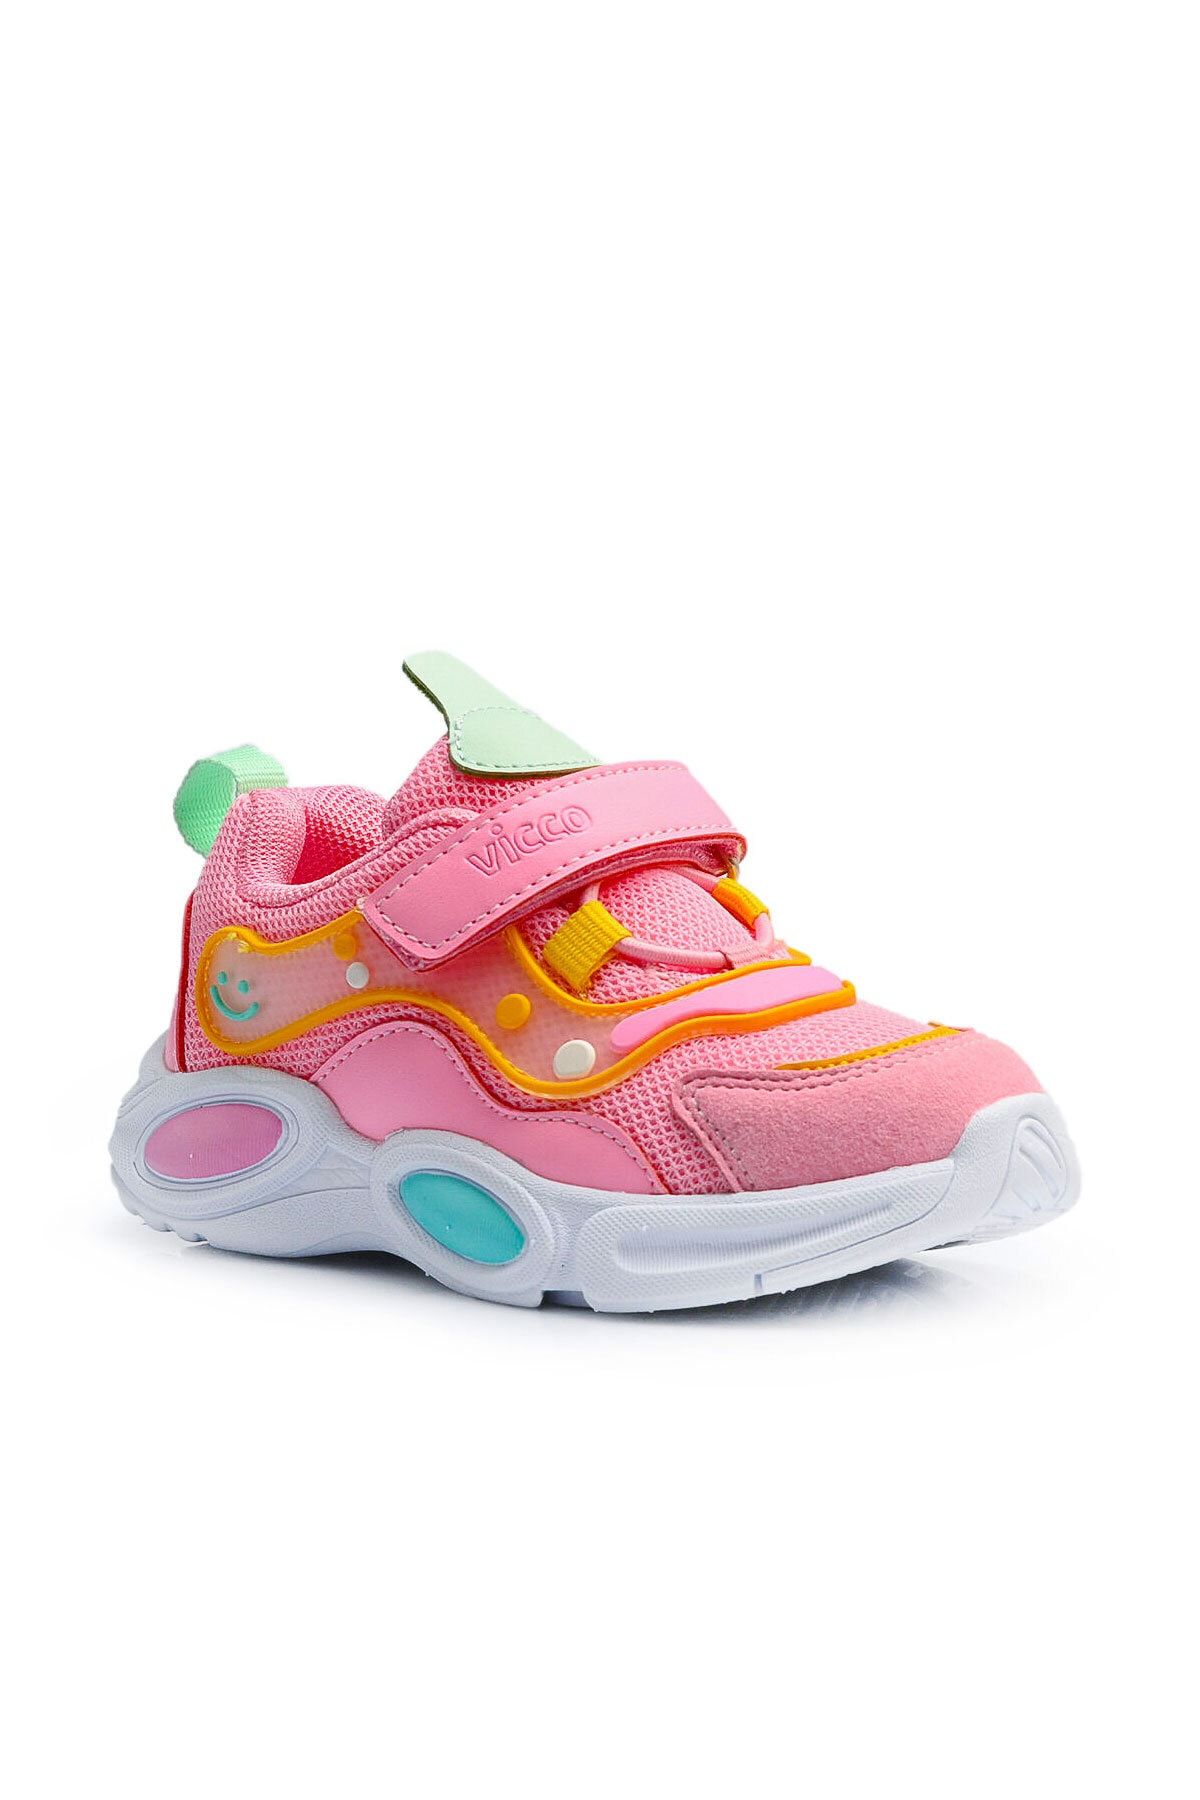 Vicco Kız Çocuk Renkli Ortopedik Soft Pyhlon Taban Bantlı Spor Ayakkabı Girl Child Colorful Shoes